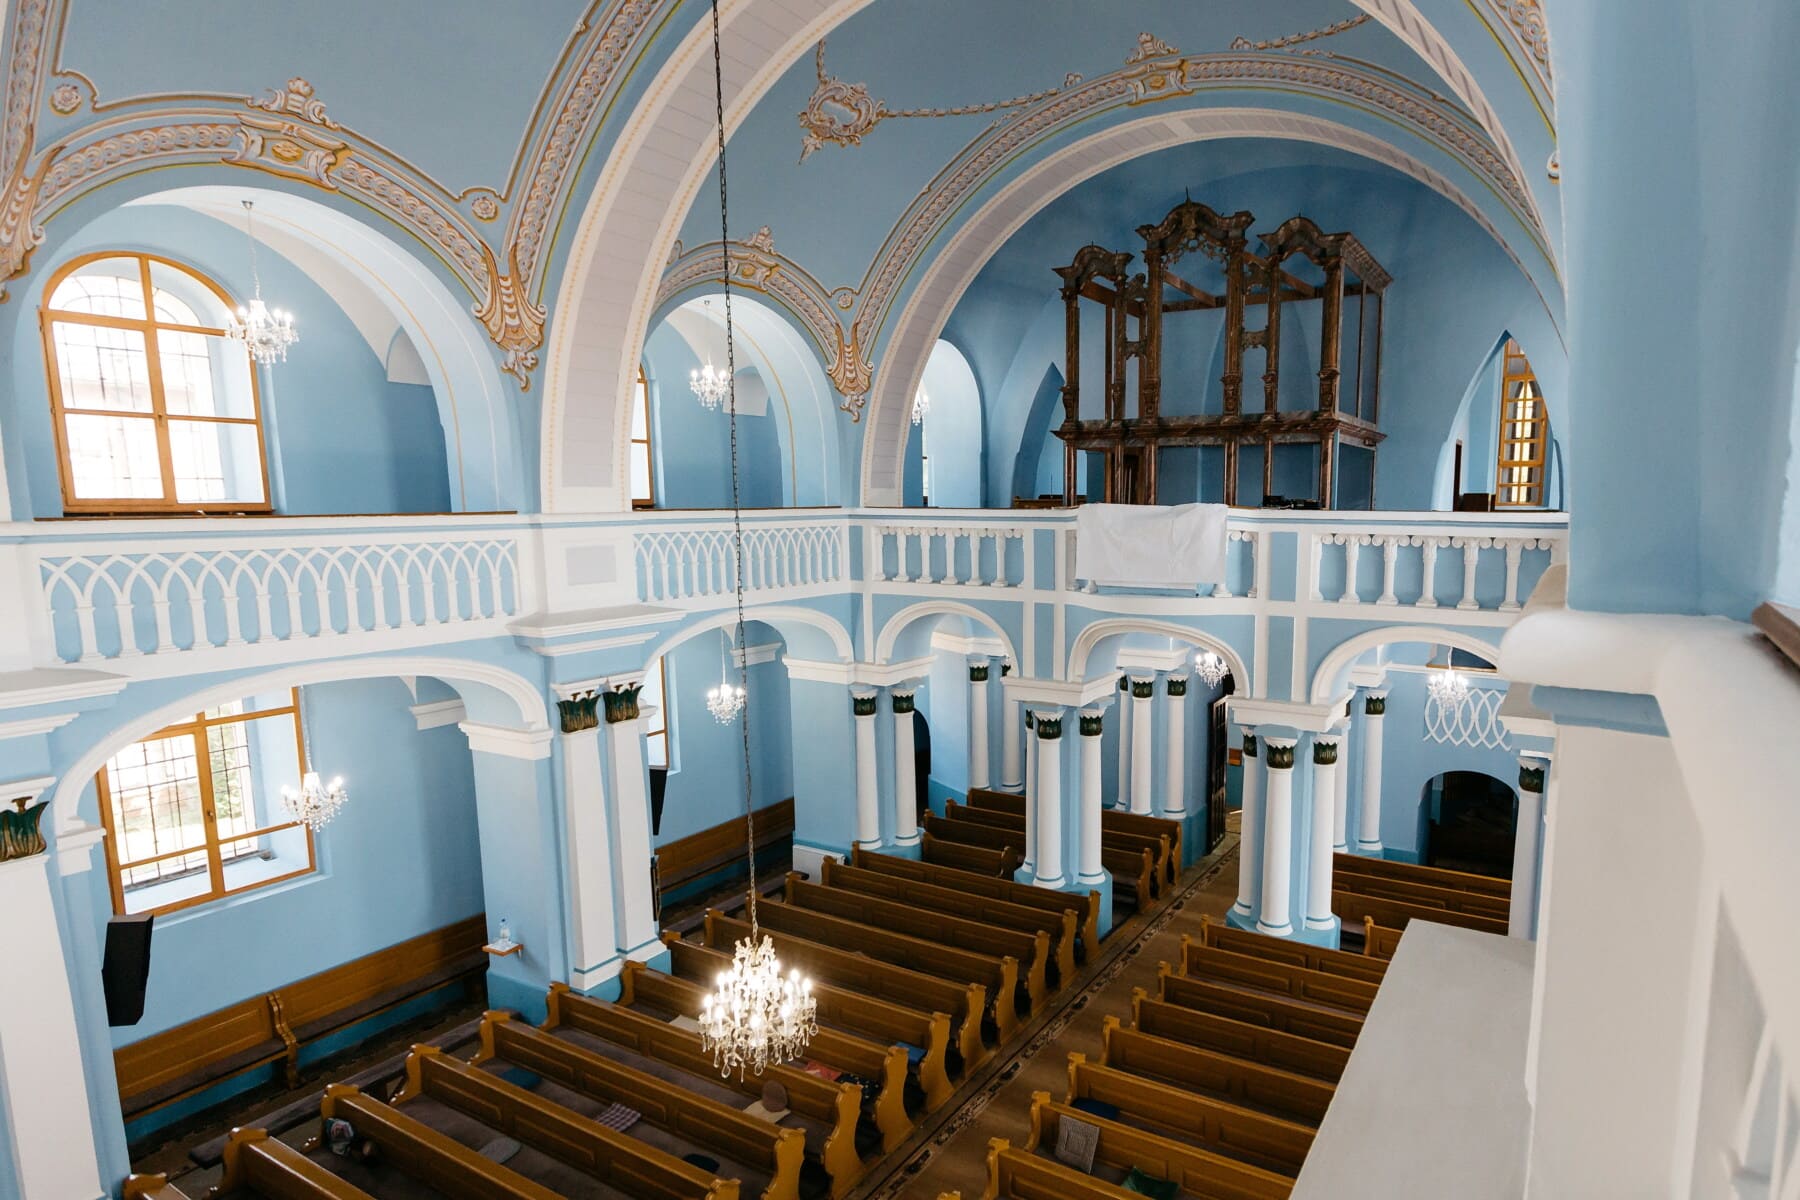 Interior, iglesia, altar, decoración de interiores, arcos, escaño, arquitectura, catedral, órgano, adentro